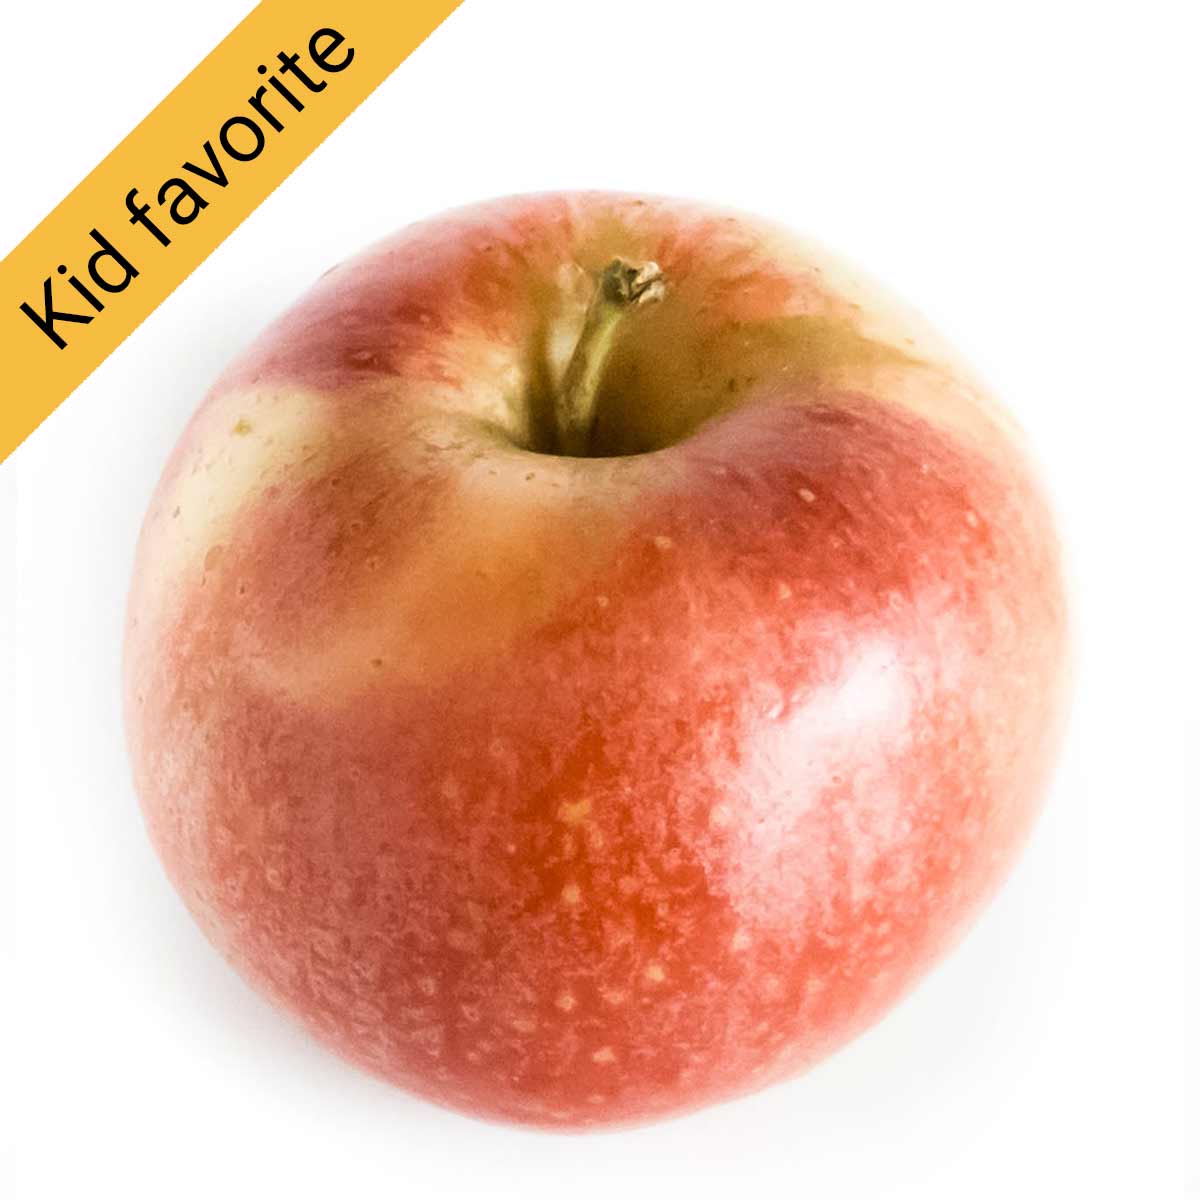 Gala apple, best for kids